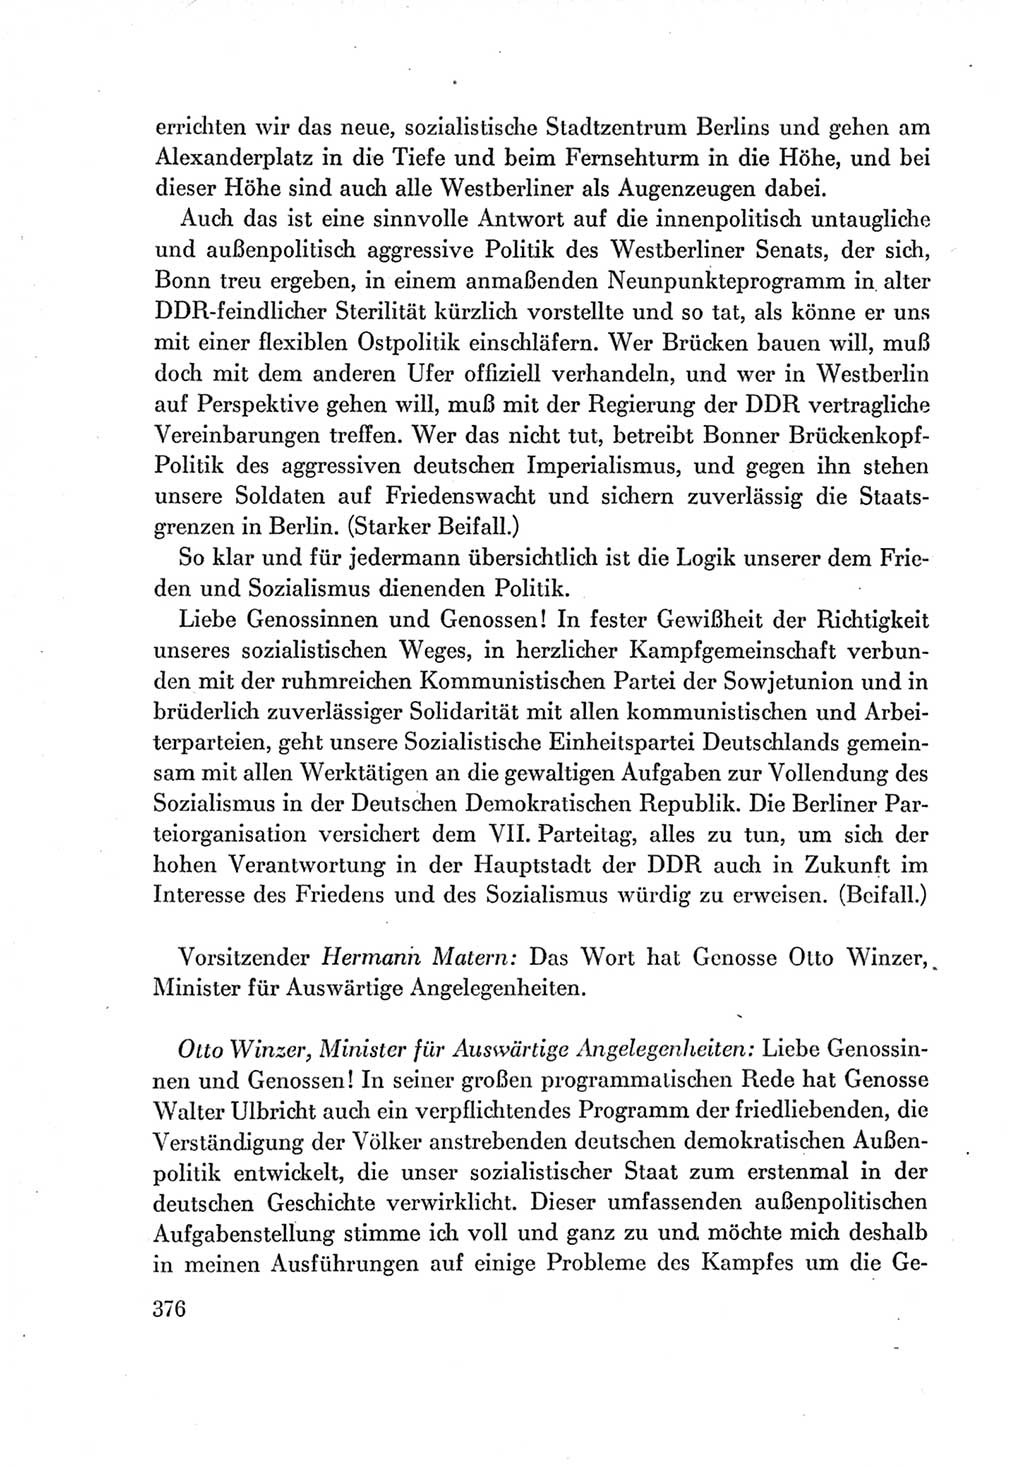 Protokoll der Verhandlungen des Ⅶ. Parteitages der Sozialistischen Einheitspartei Deutschlands (SED) [Deutsche Demokratische Republik (DDR)] 1967, Band Ⅰ, Seite 376 (Prot. Verh. Ⅶ. PT SED DDR 1967, Bd. Ⅰ, S. 376)